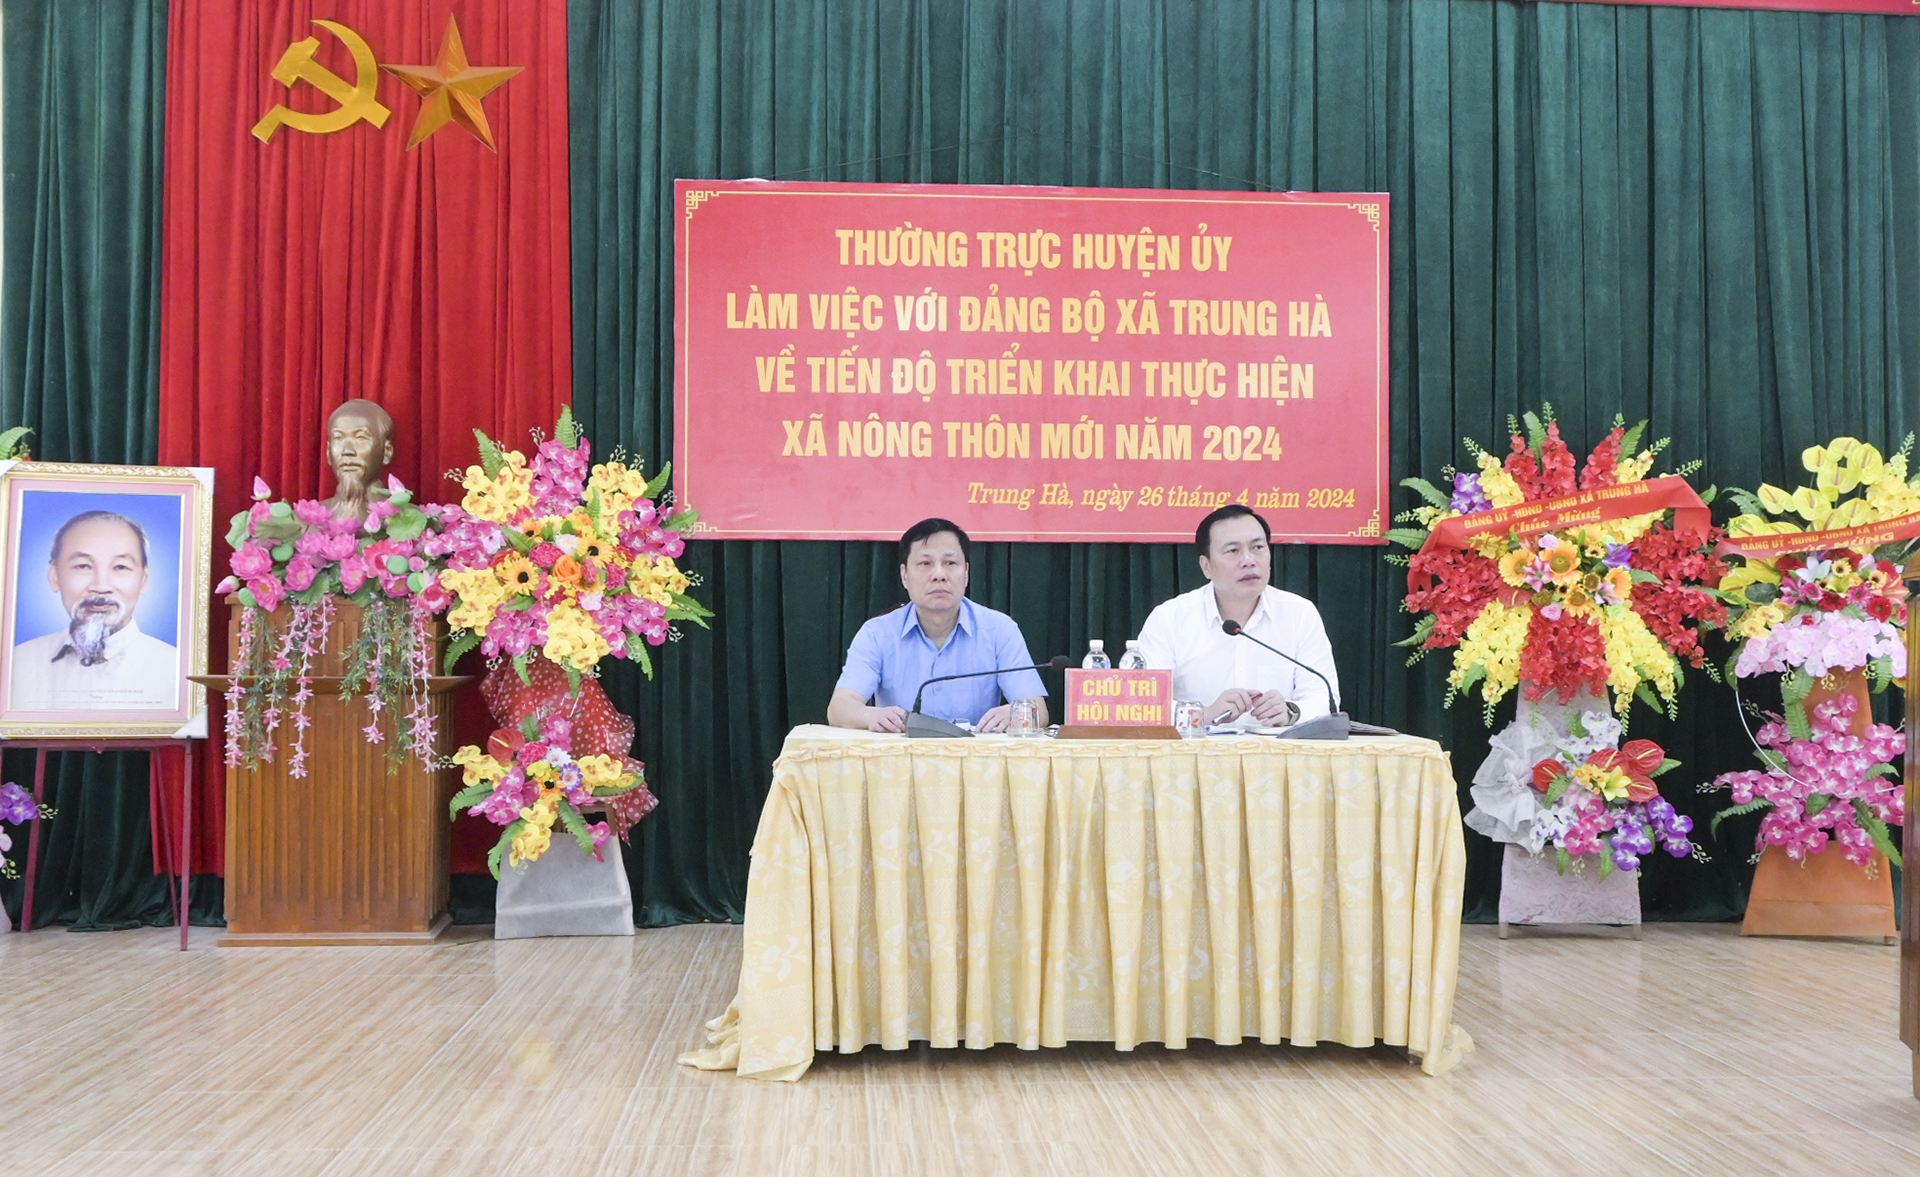 Thường trực Huyện ủy làm việc với Đảng ủy xã Trung Hà về tiến độ triển khai thực hiện Chương trình mục tiêu quốc gia xây dựng nông thôn mới năm 2024